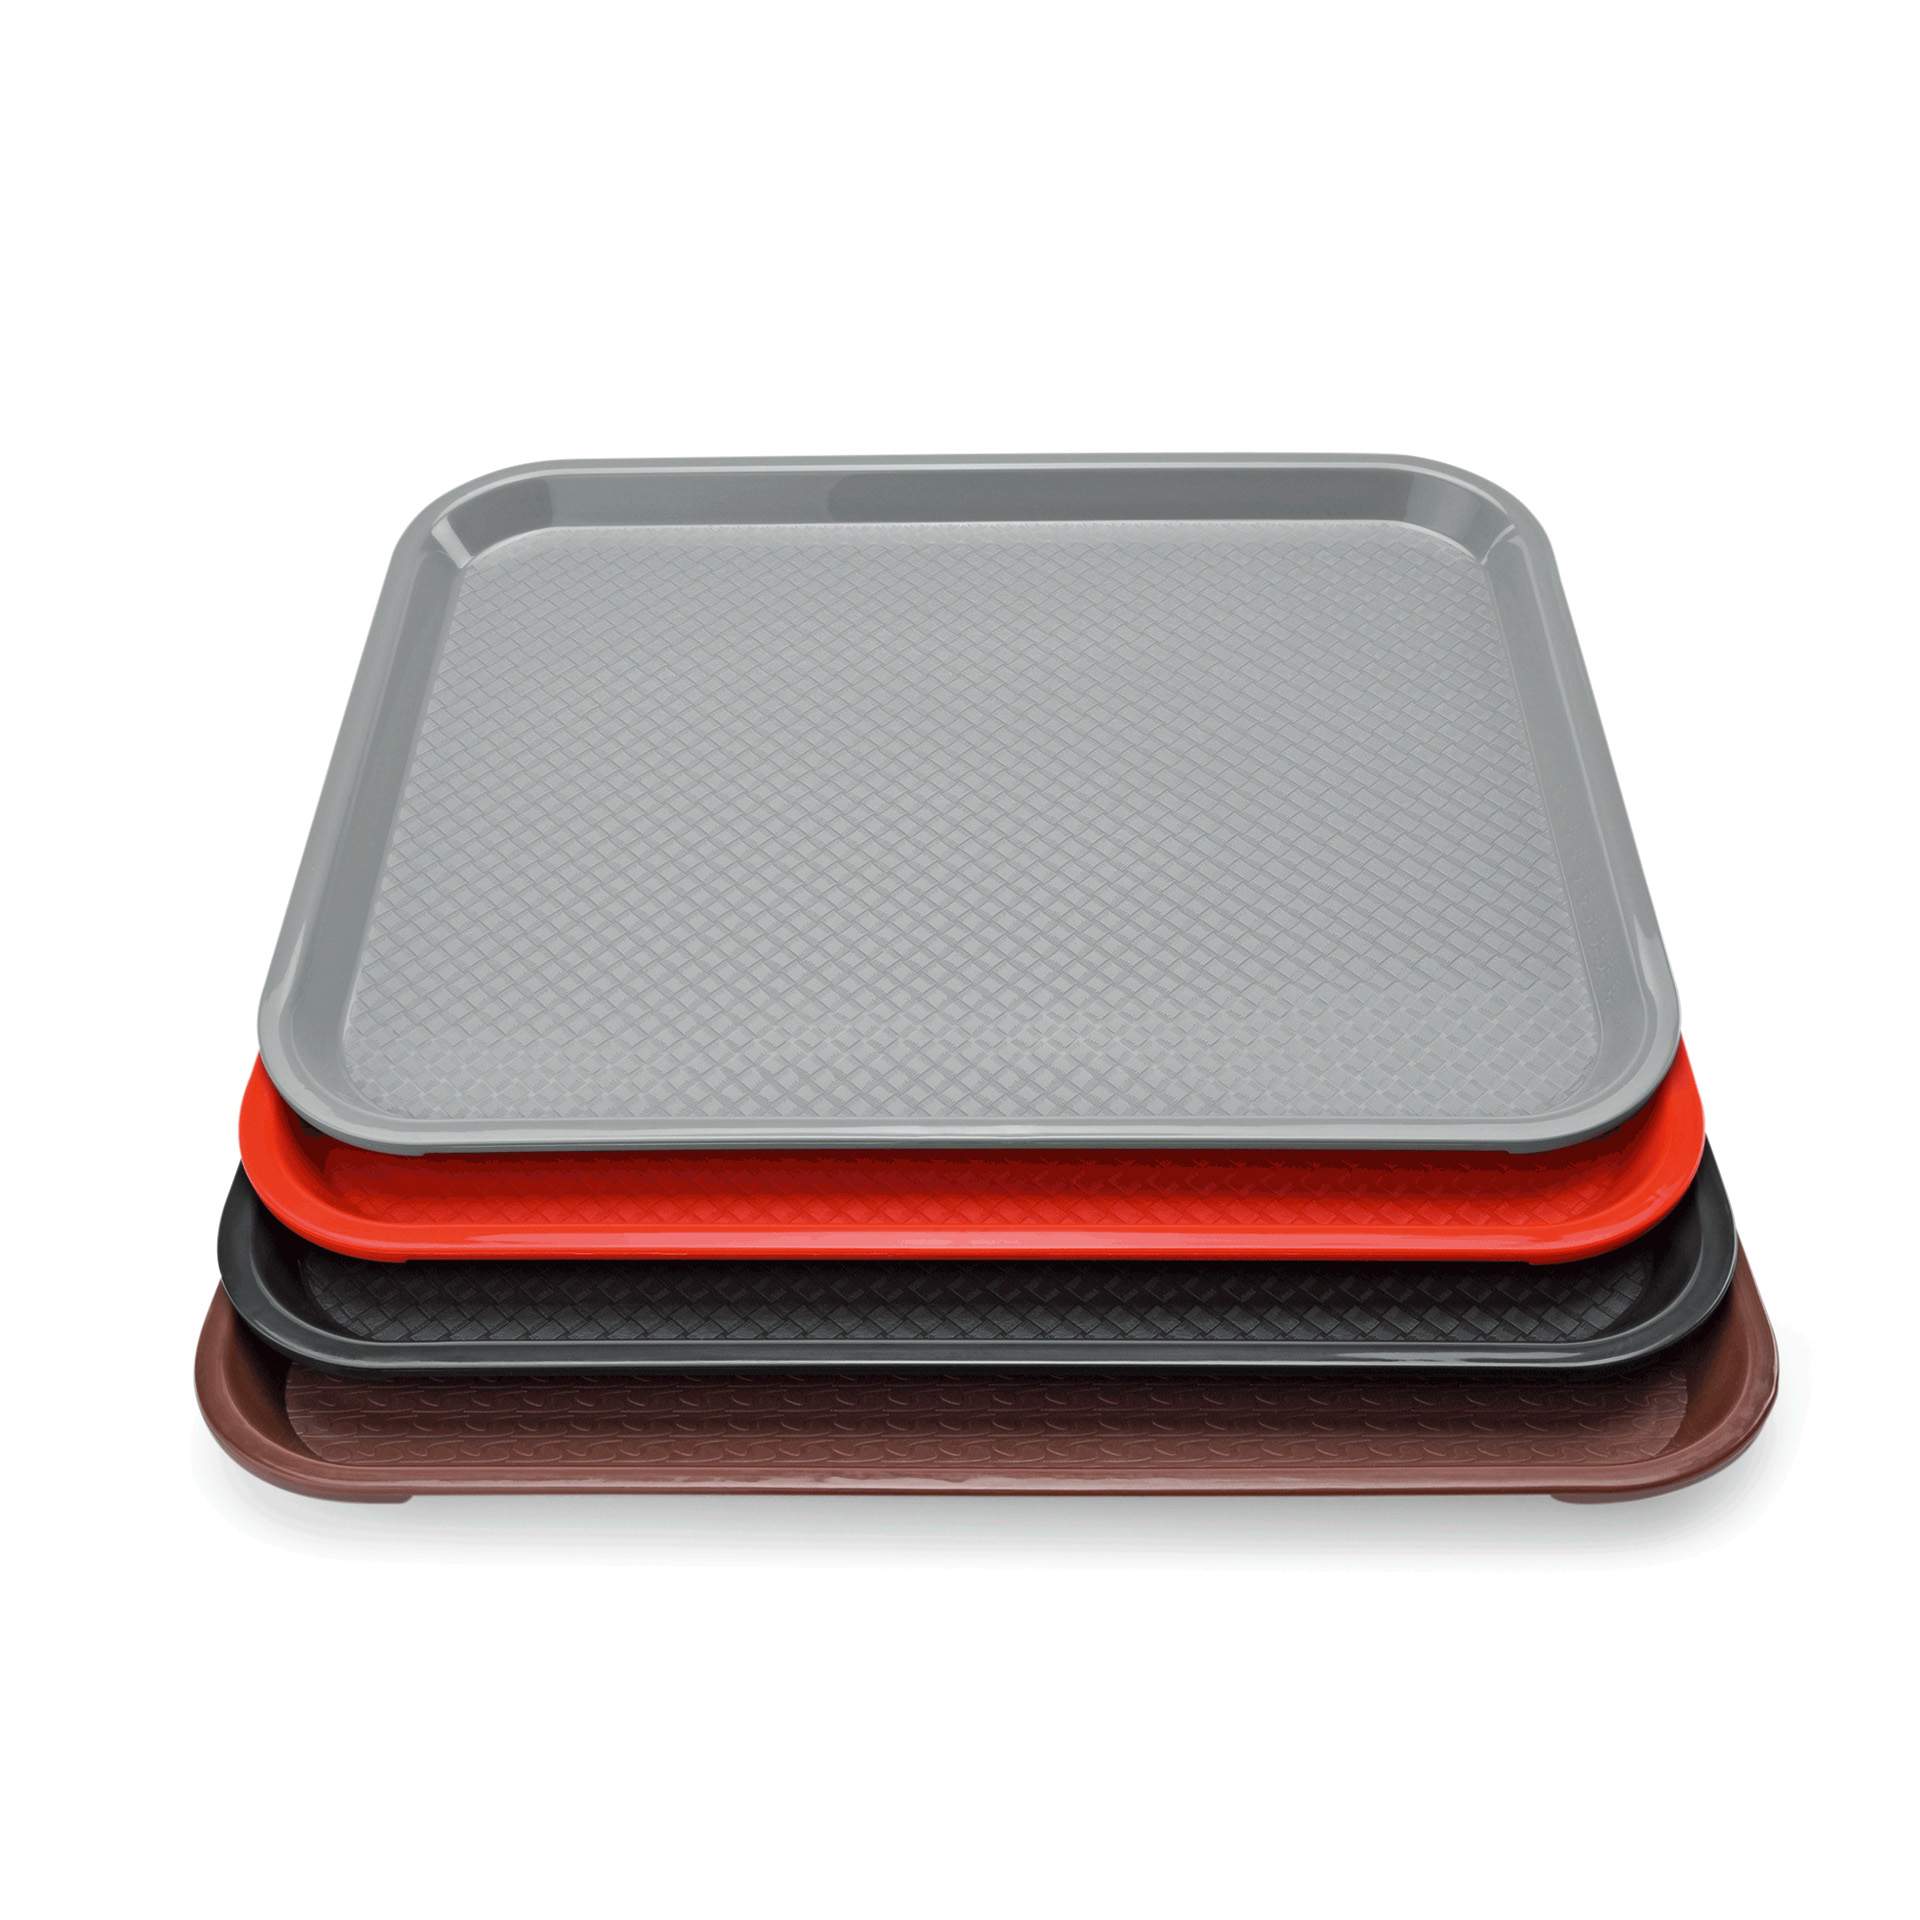 Tablett - Stapelnocken - Serie 9520 - lichtgrau - Abm. 35,3 x 27,5 cm - Polypropylen - 9520355-A